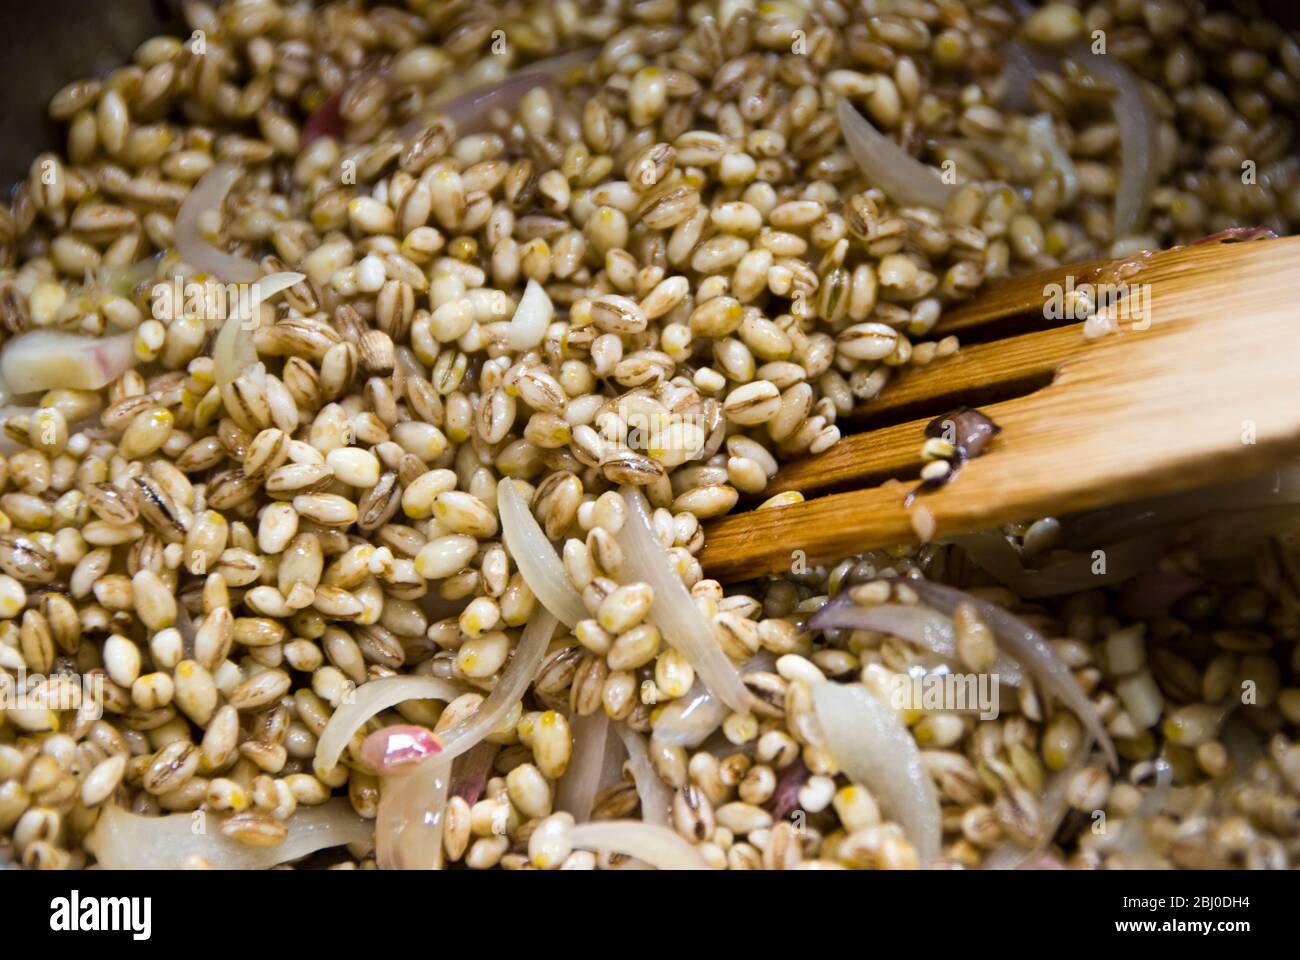 Cottura dei chicchi d'orzo con cipolle affettate in olio d'oliva, iniziando a fare risotto d'orzo - Foto Stock